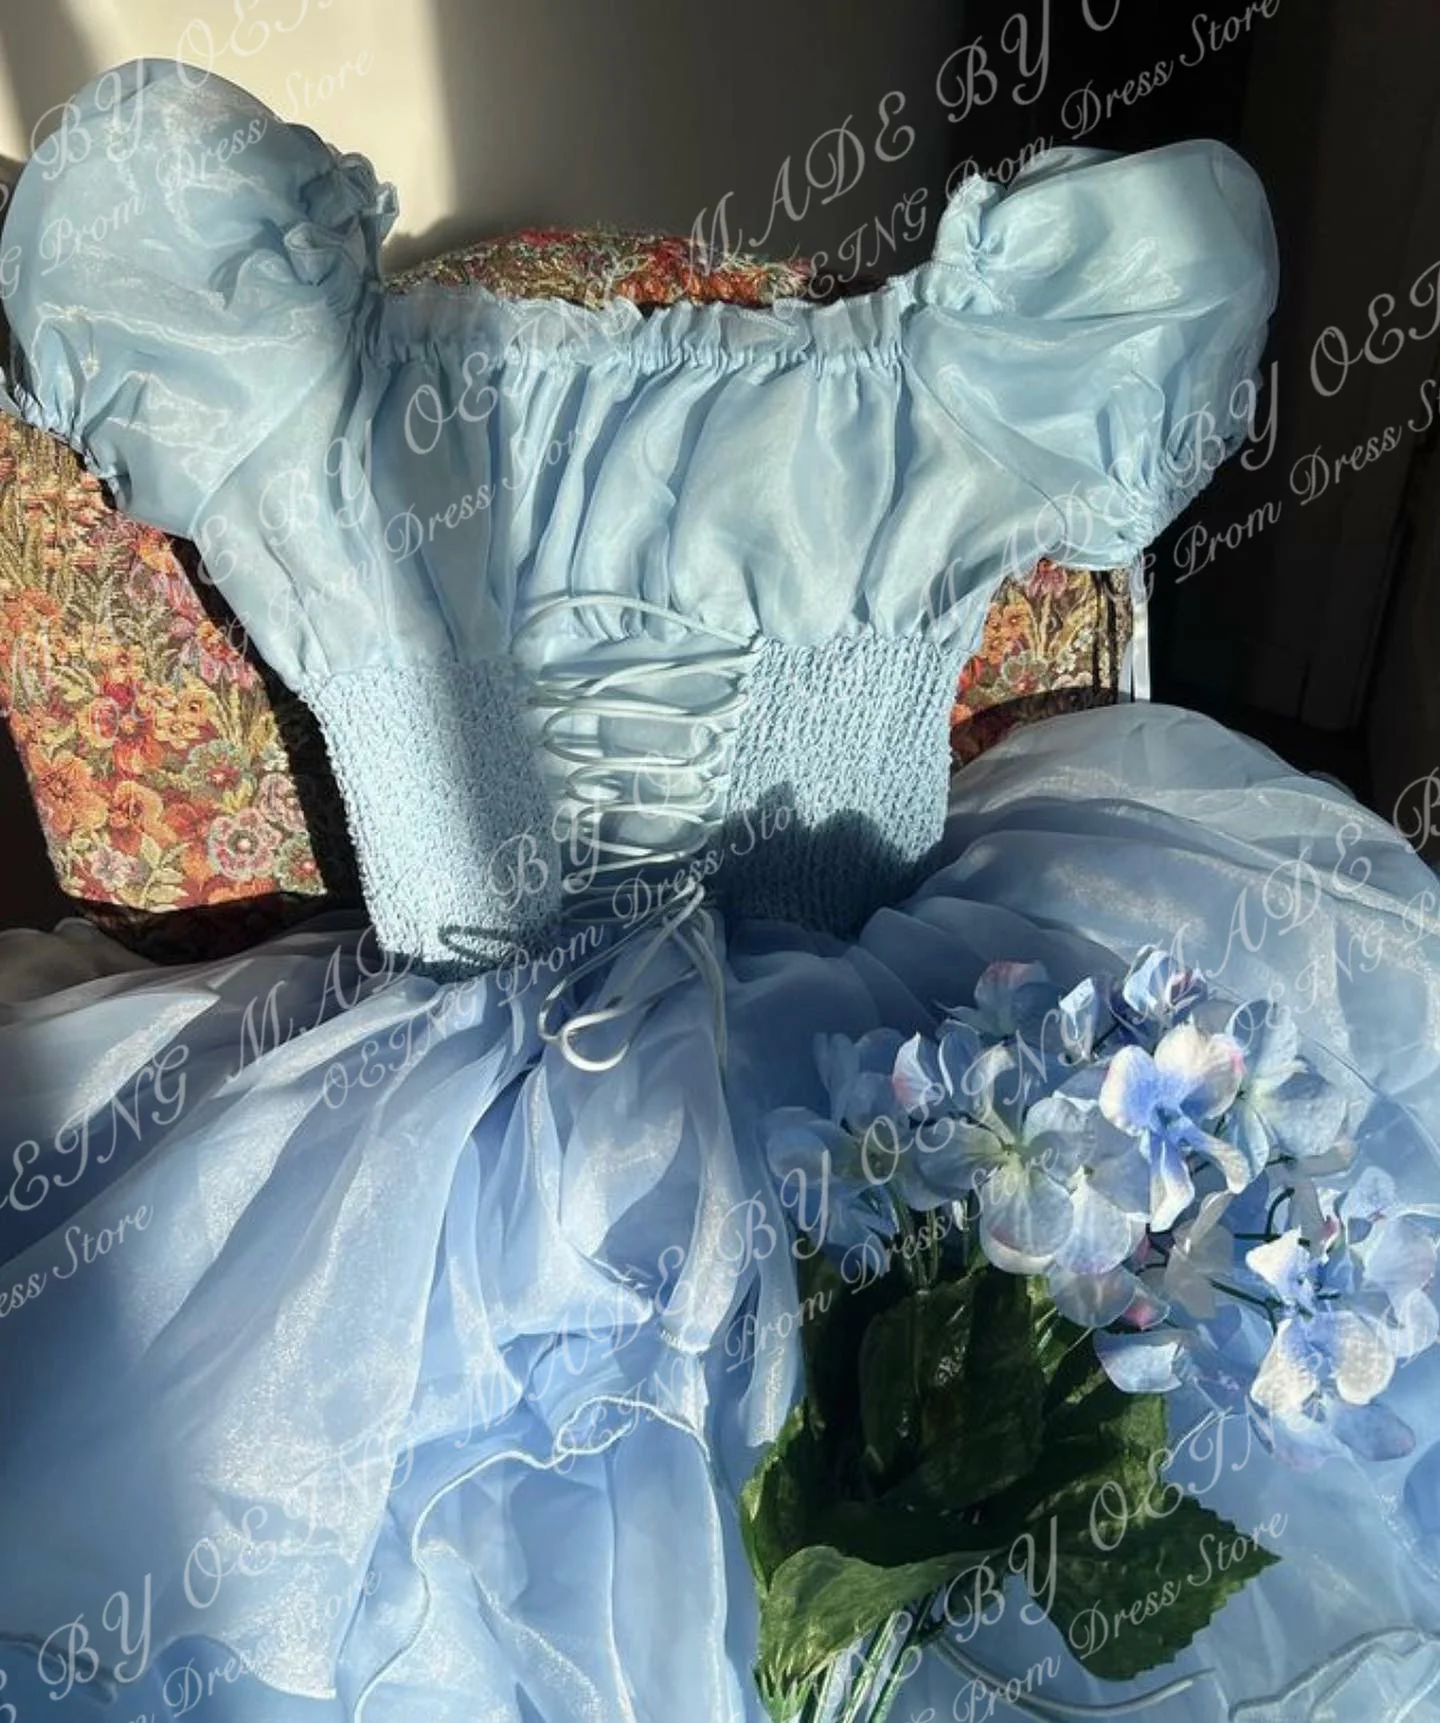 OEING Fairy Long Evening Dresses Princess Ruched Ruffles Organza Prom Suknelės Pūstomis rankovėmis Oficiali grindų ilgio išleistuvių suknelė